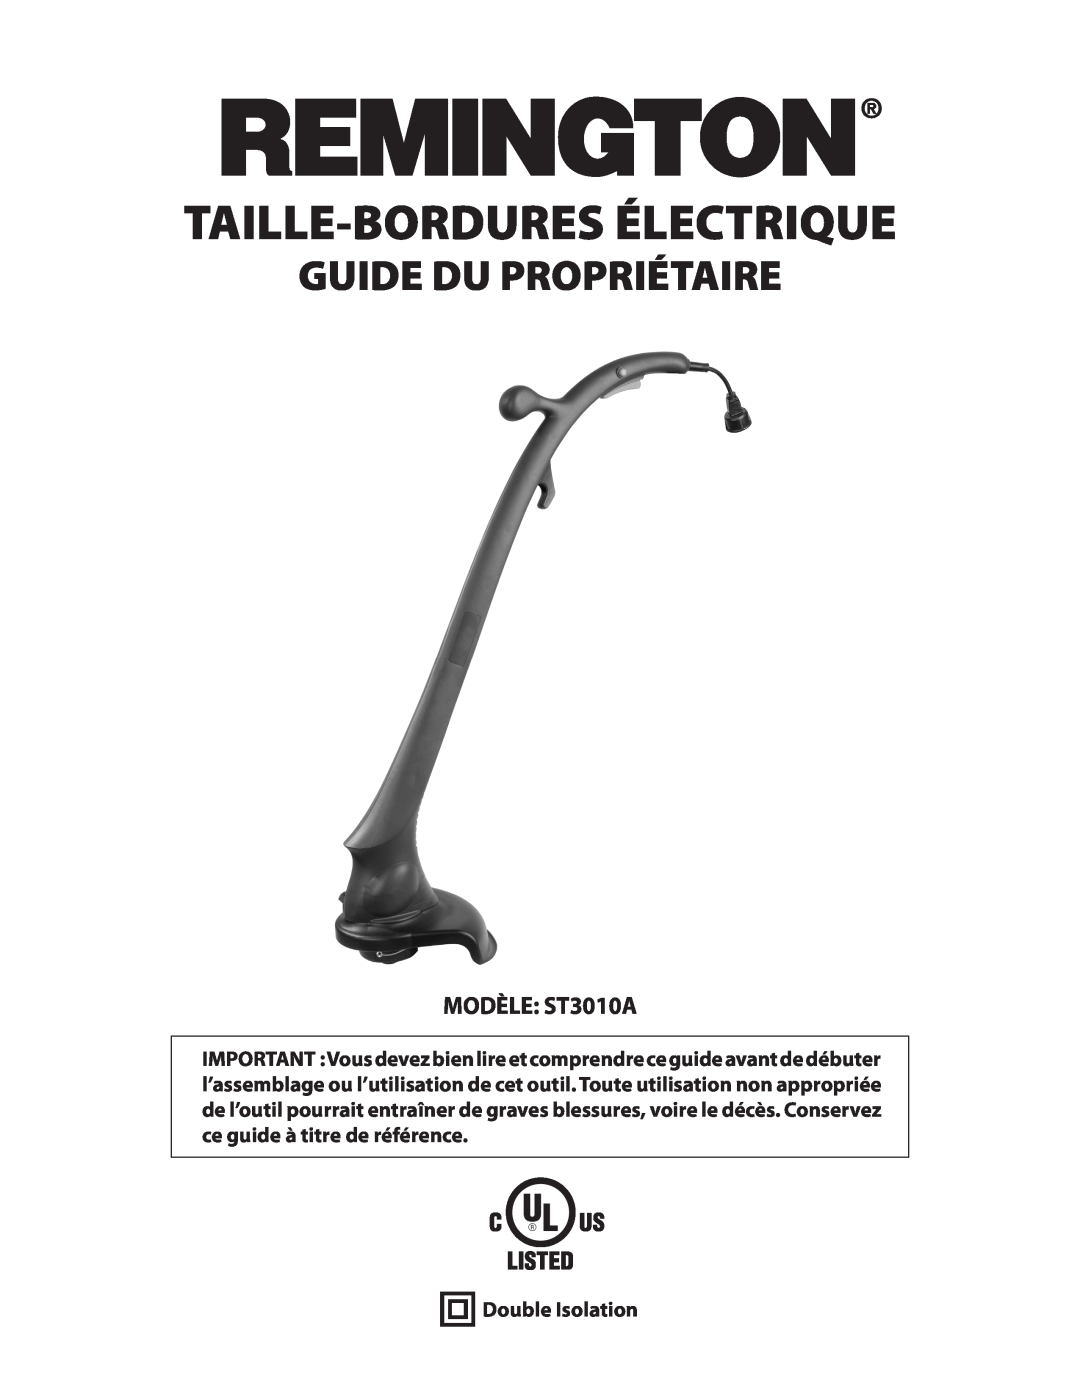 Remington Power Tools owner manual Taille-Bordures Électrique, Guide Du Propriétaire, MODÈLE ST3010A, Double Isolation 